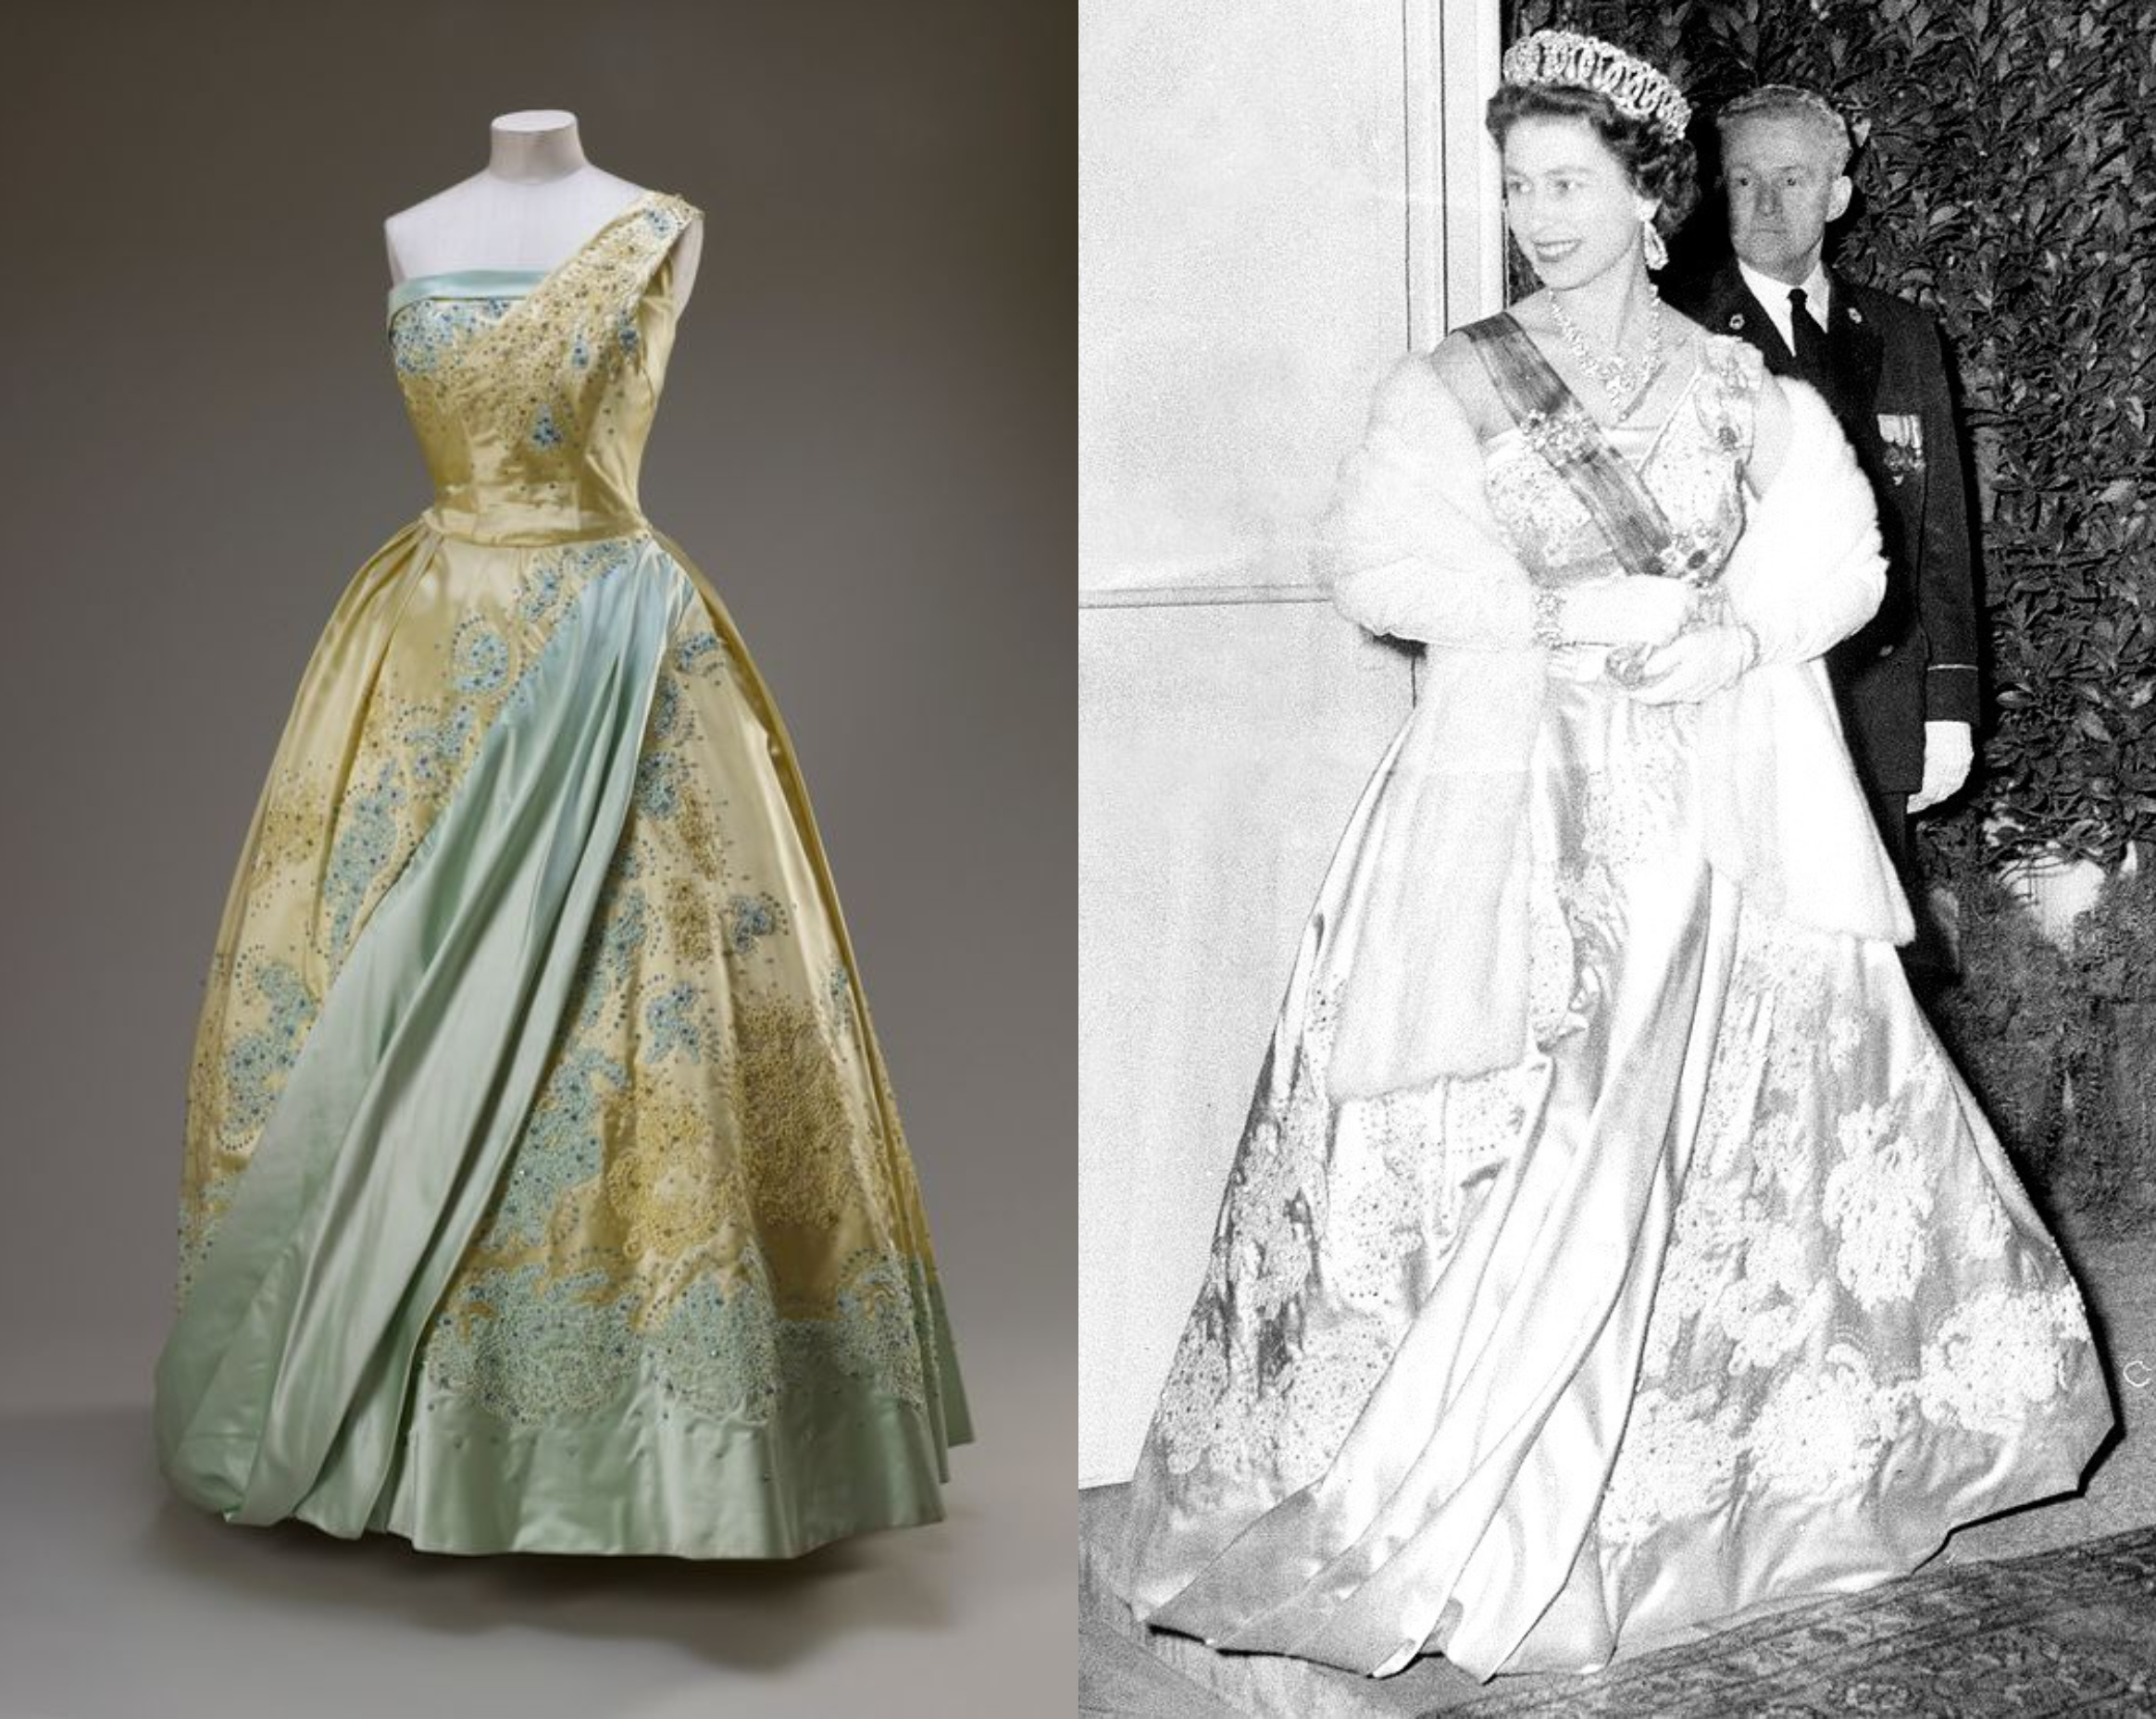 Ngày 25/3/1958, Nữ hoàng mặc một chiếc váy lệch vai màu xanh da trời hòa cùng màu vàng tại buổi ...